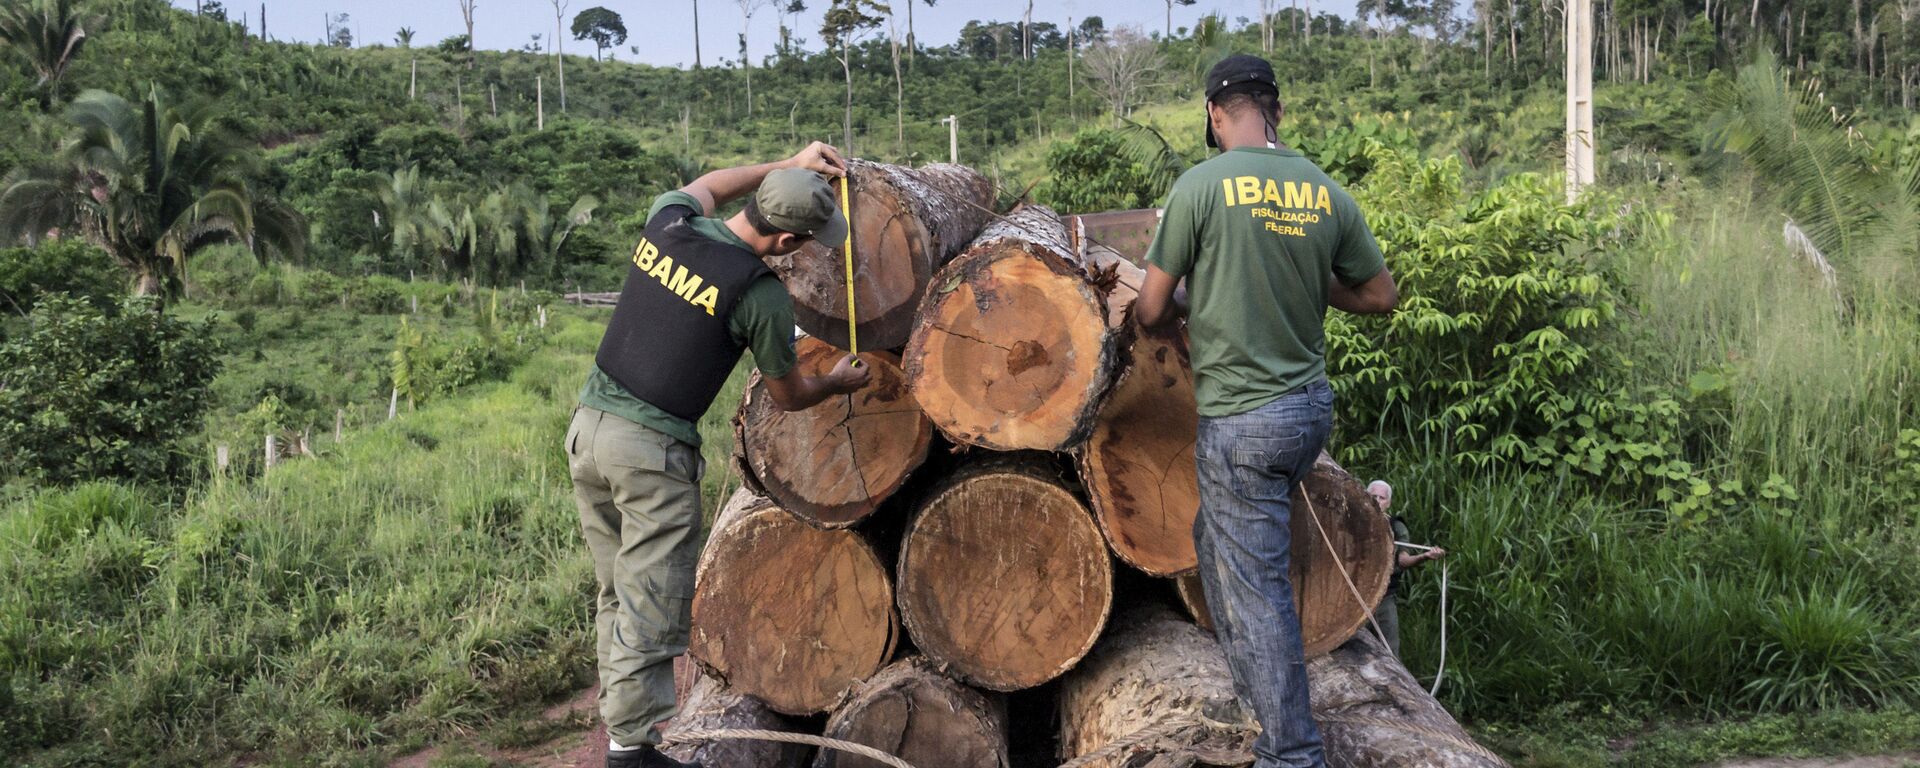 Agentes do Ibama apreendem uma carga ilegal de madeira na área indígena de Cachoeira Seca, no Pará - Sputnik Brasil, 1920, 15.12.2021